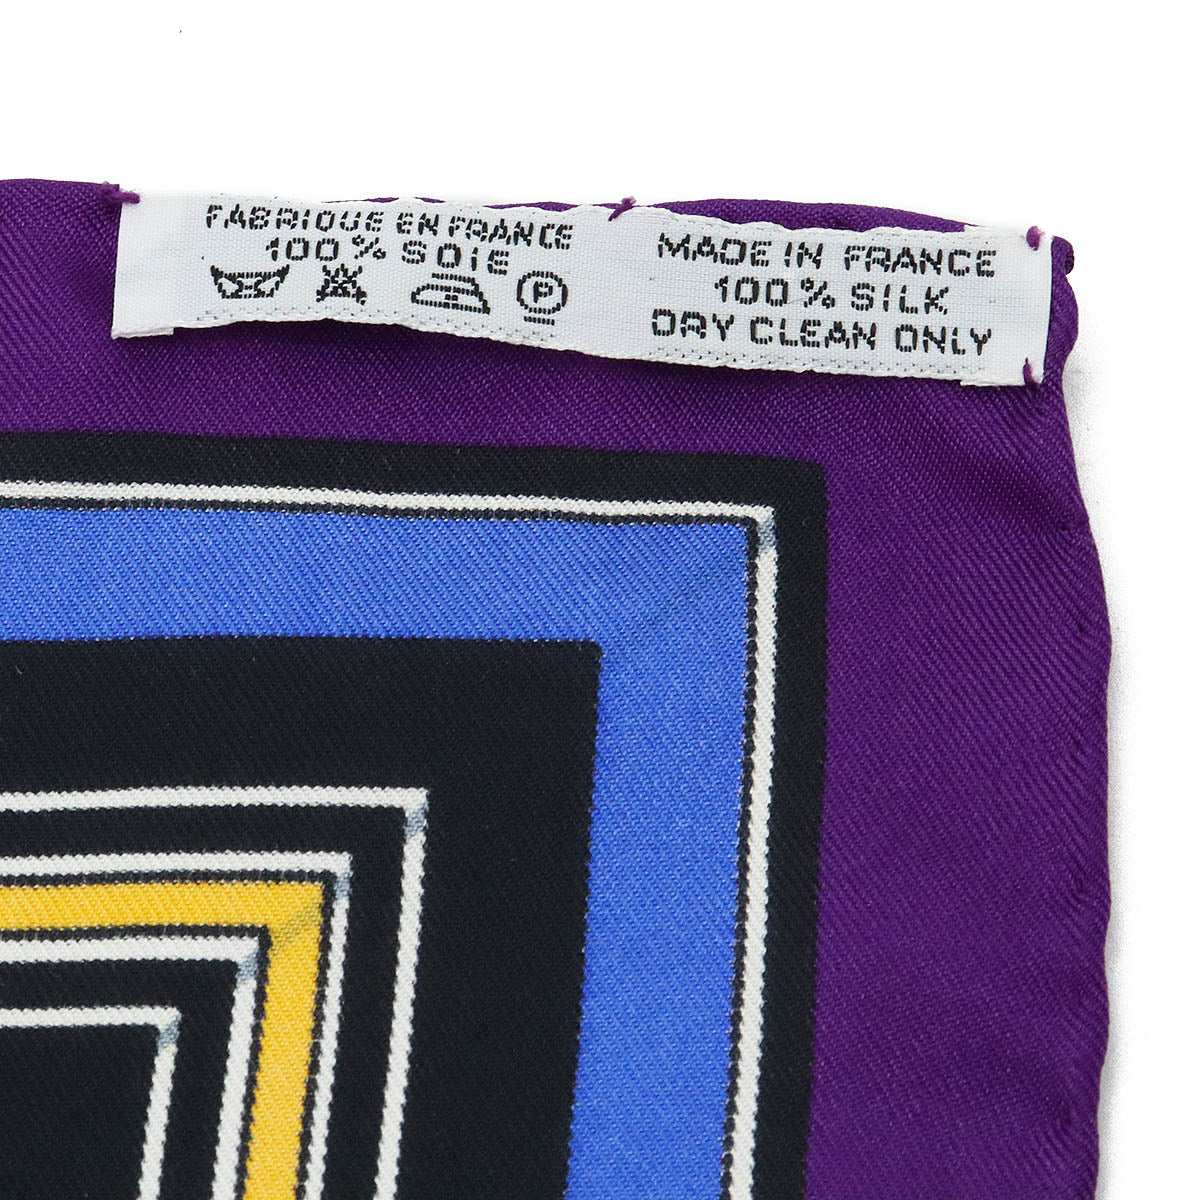 HERMES 愛馬仕 Carré 90 圍巾 Couvertures et Tenues de Jour 馬服裝 100% 真絲紫色多色